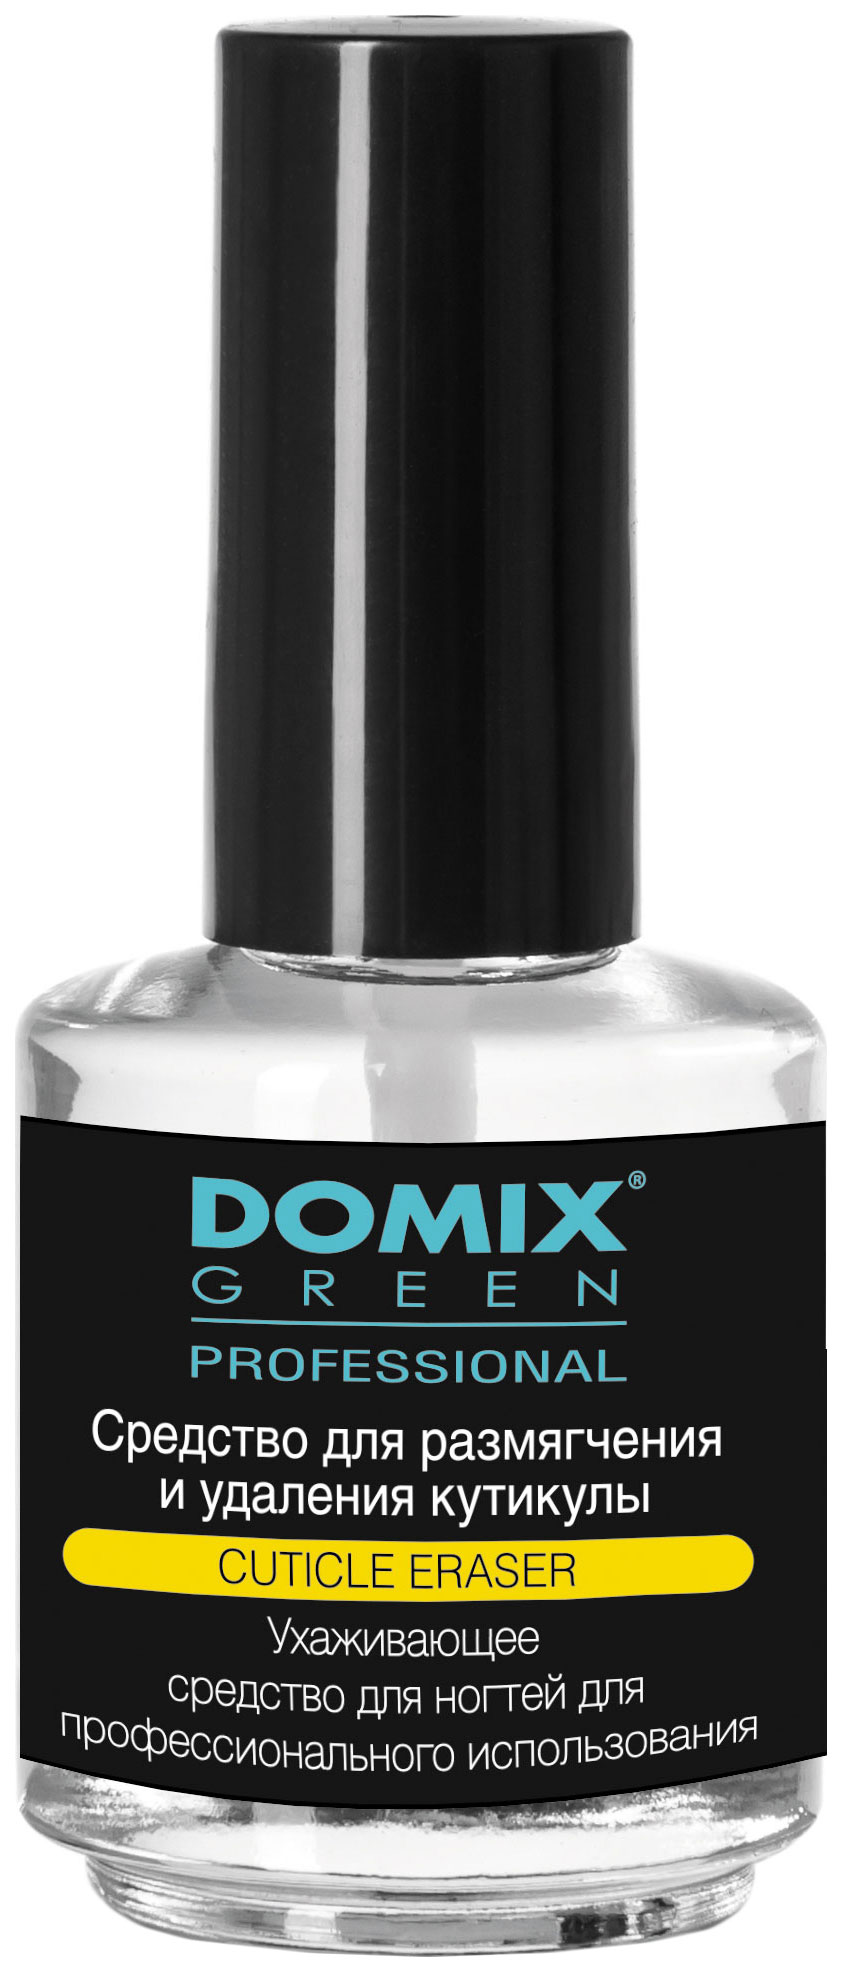 Средство для удаления кутикулы Domix Green Professional Cuticle Eraser 17 мл крем для тела domix green professional sensational solution wildflower